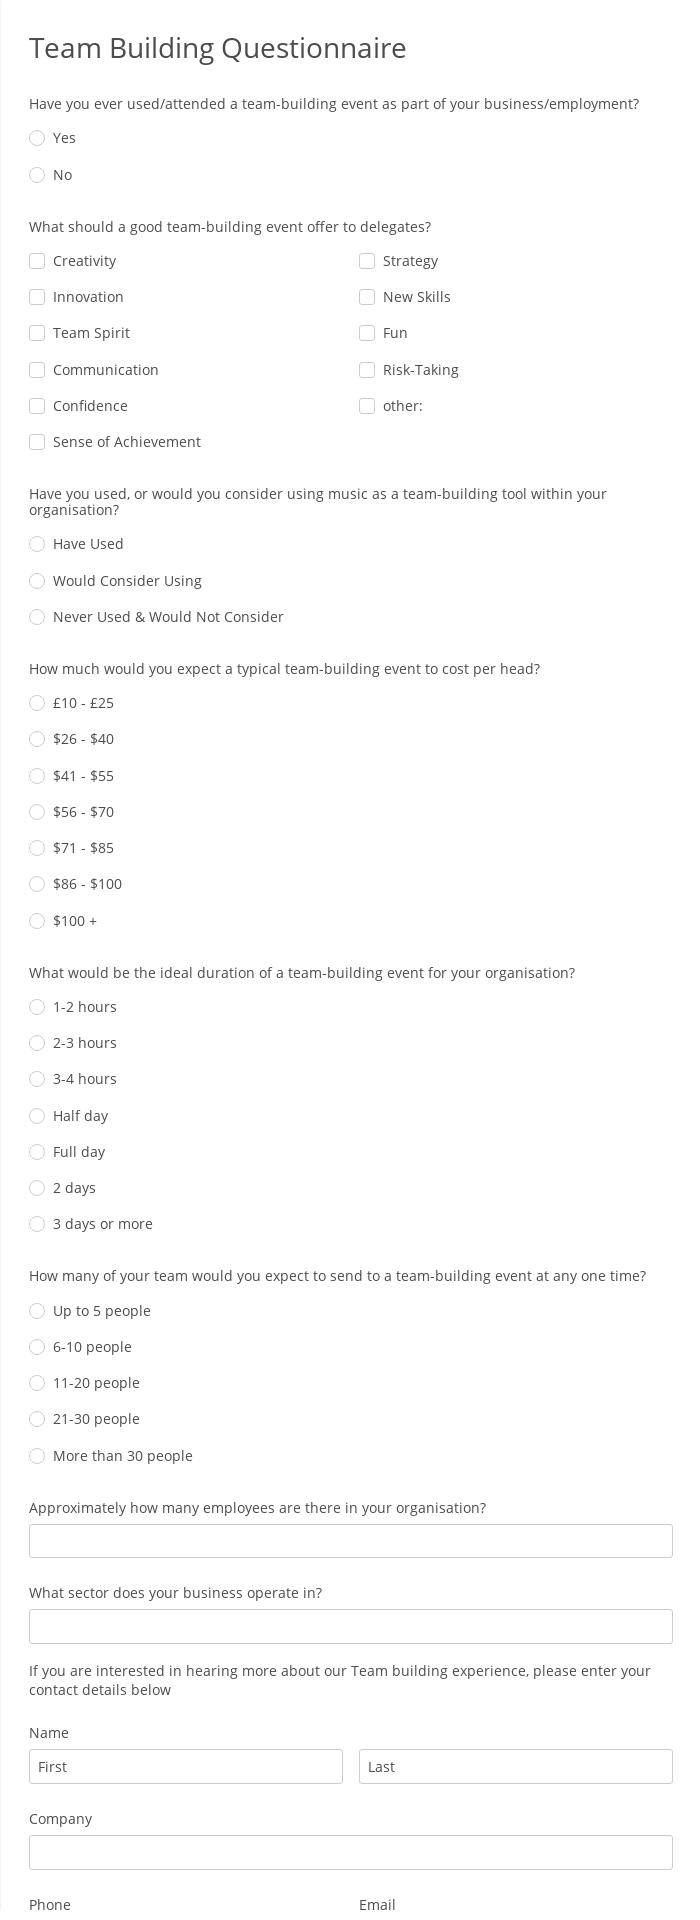 Team Building Questionnaire